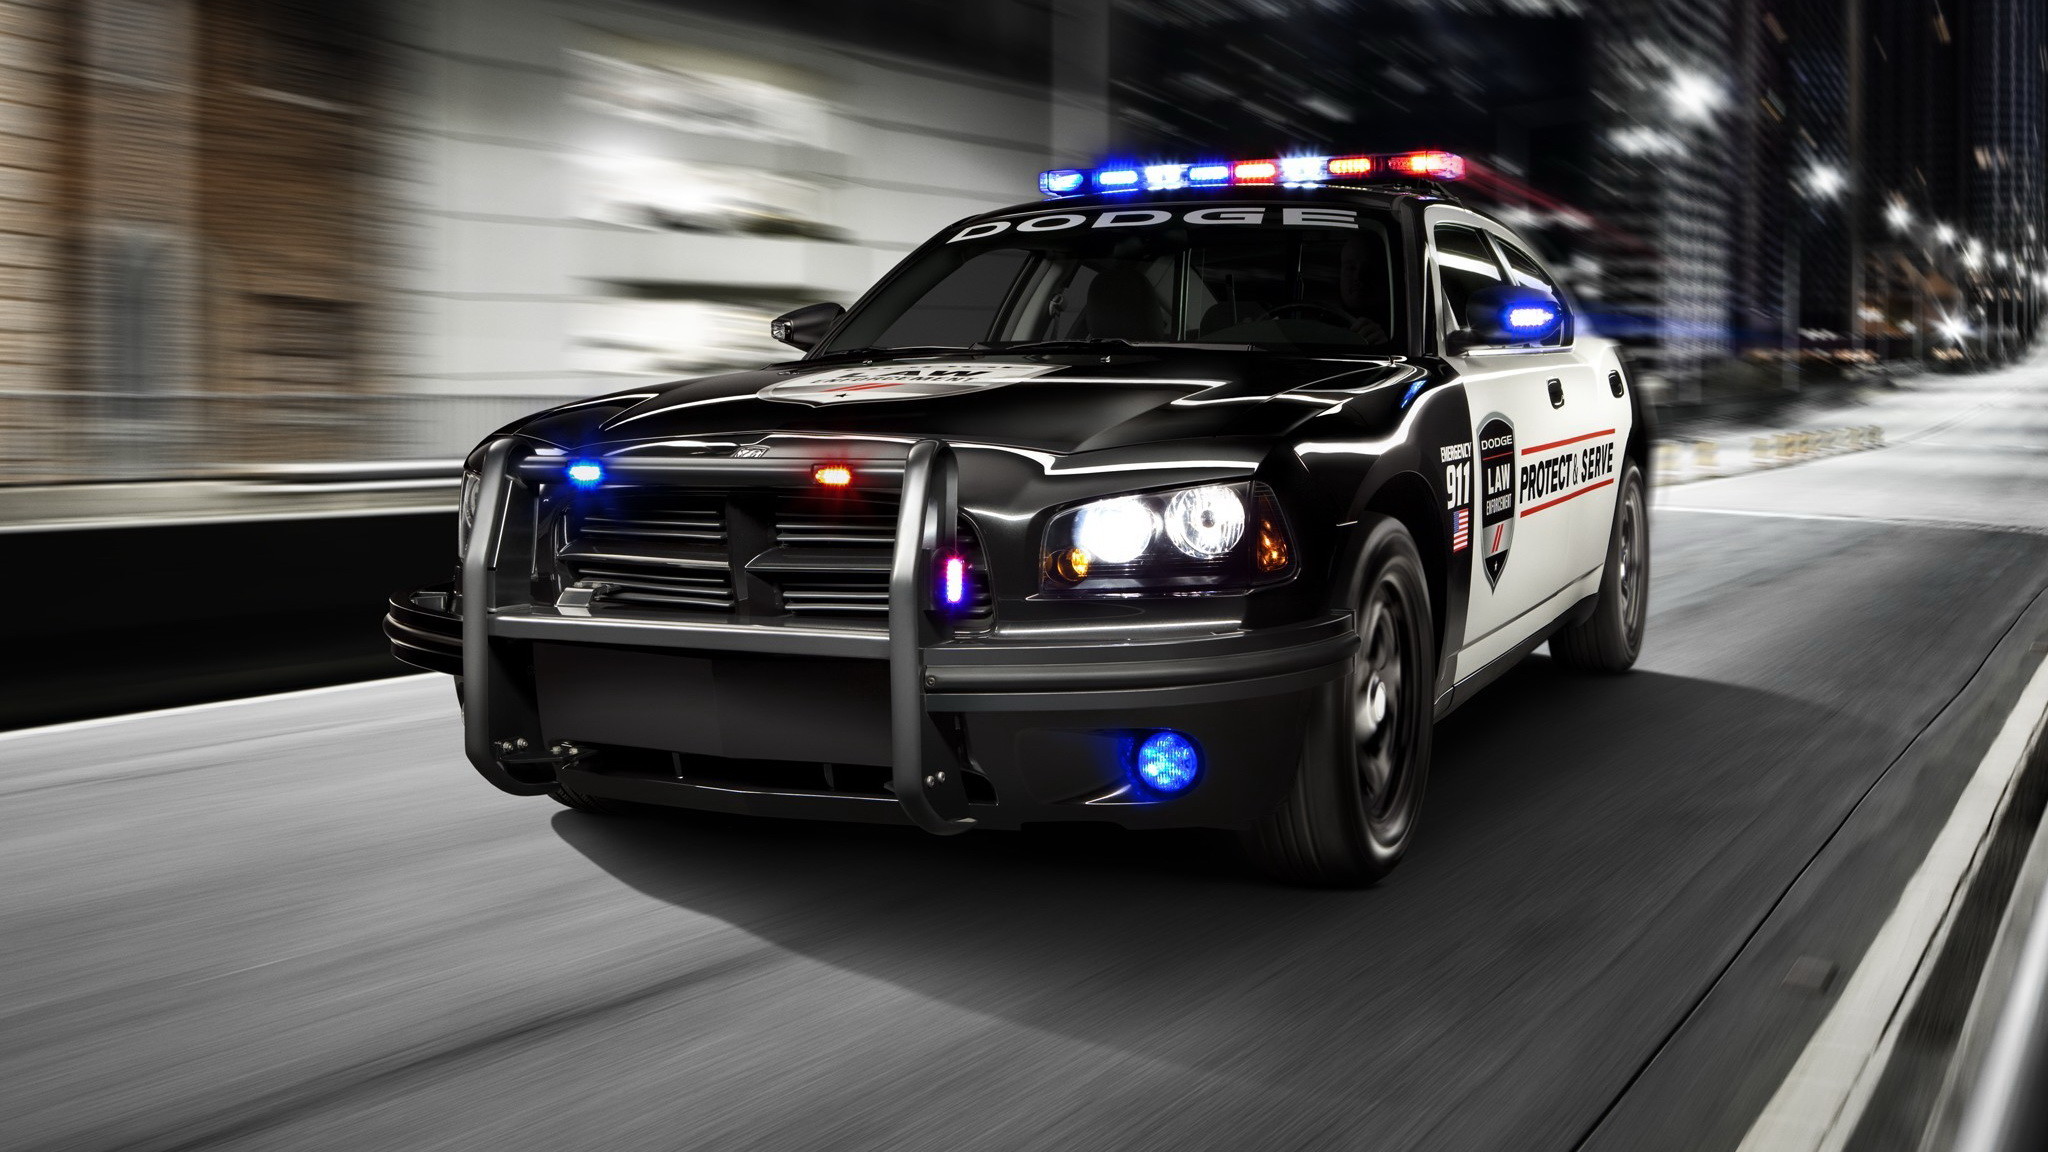 2048x1152 Cool Police Cars Wallpaper - WallpaperSafari